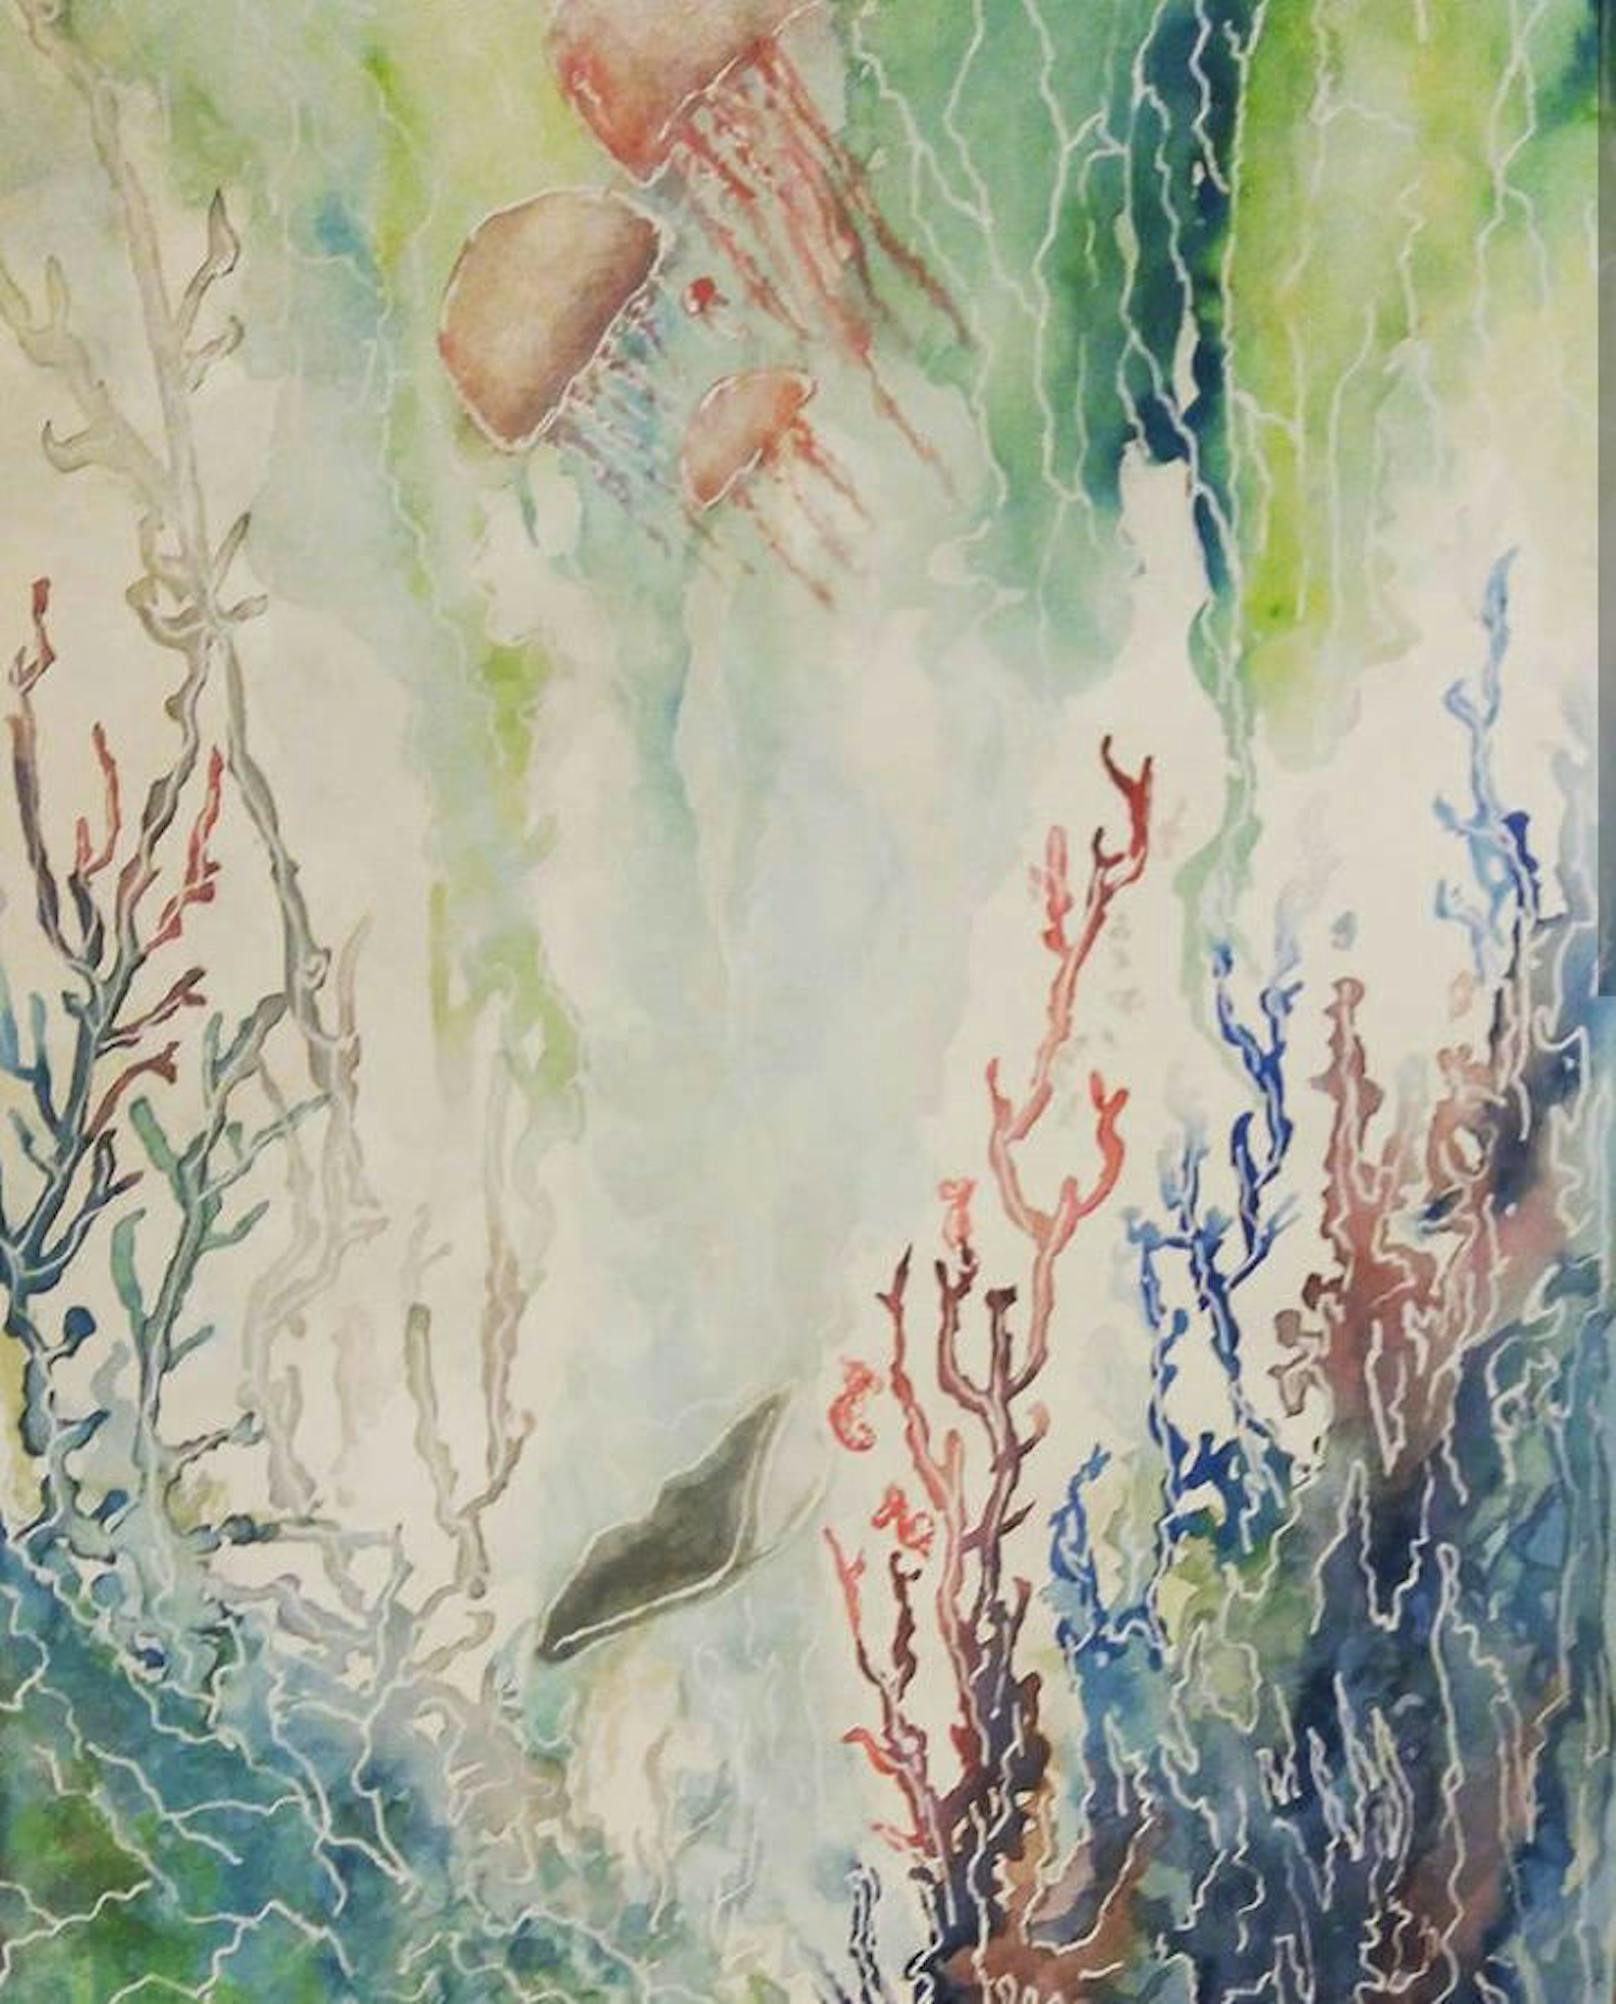 Astrid: "Meine Unterwasserwelt... ( Pinsel,aquarell,weißer Gelstift)"